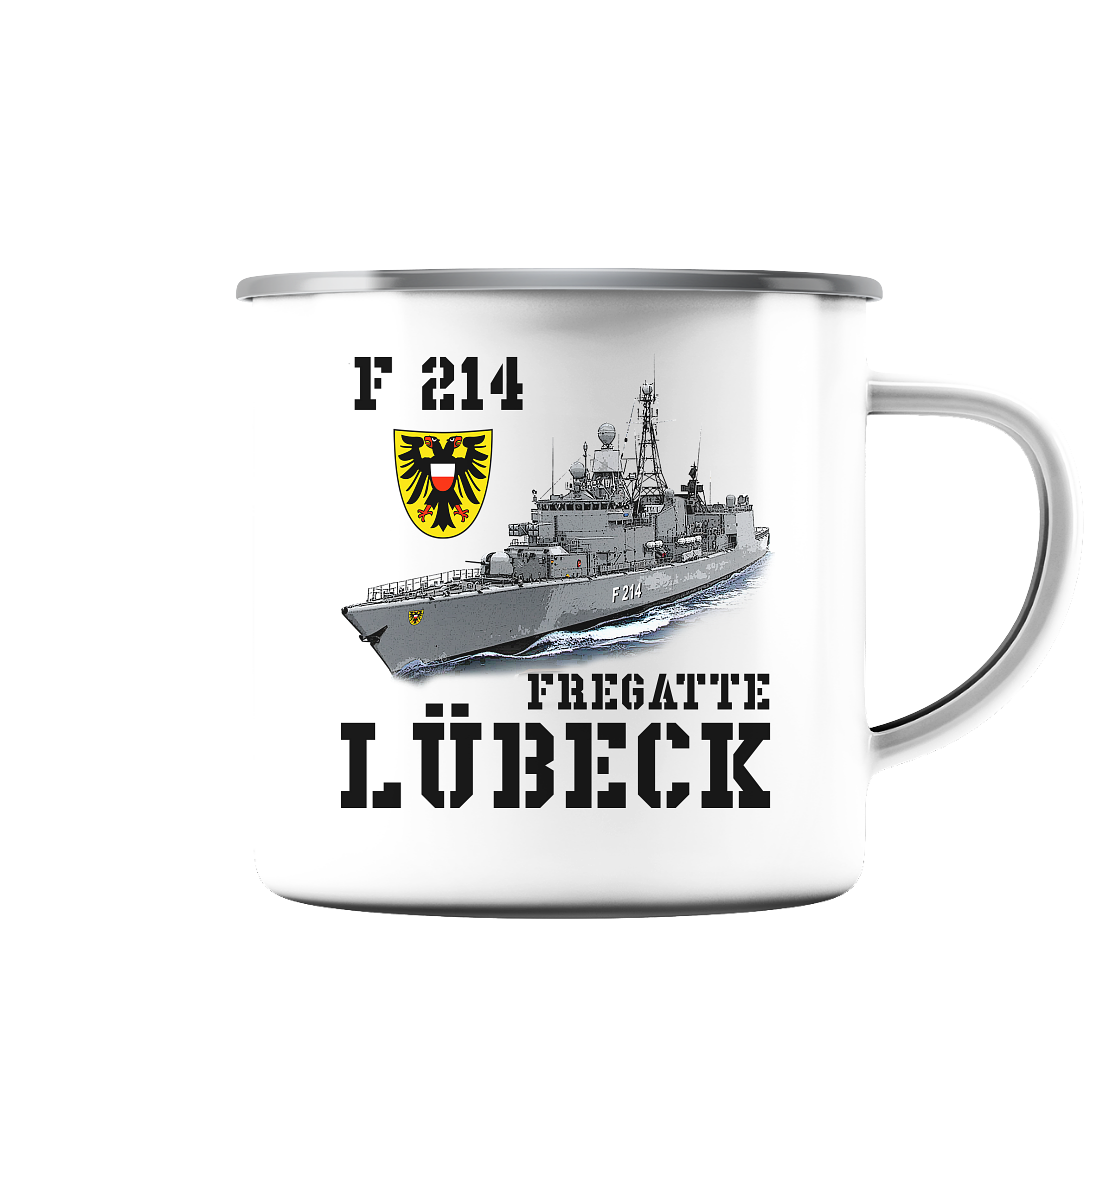 F214 Fregatte LÜBECK - Emaille Tasse (Silber)